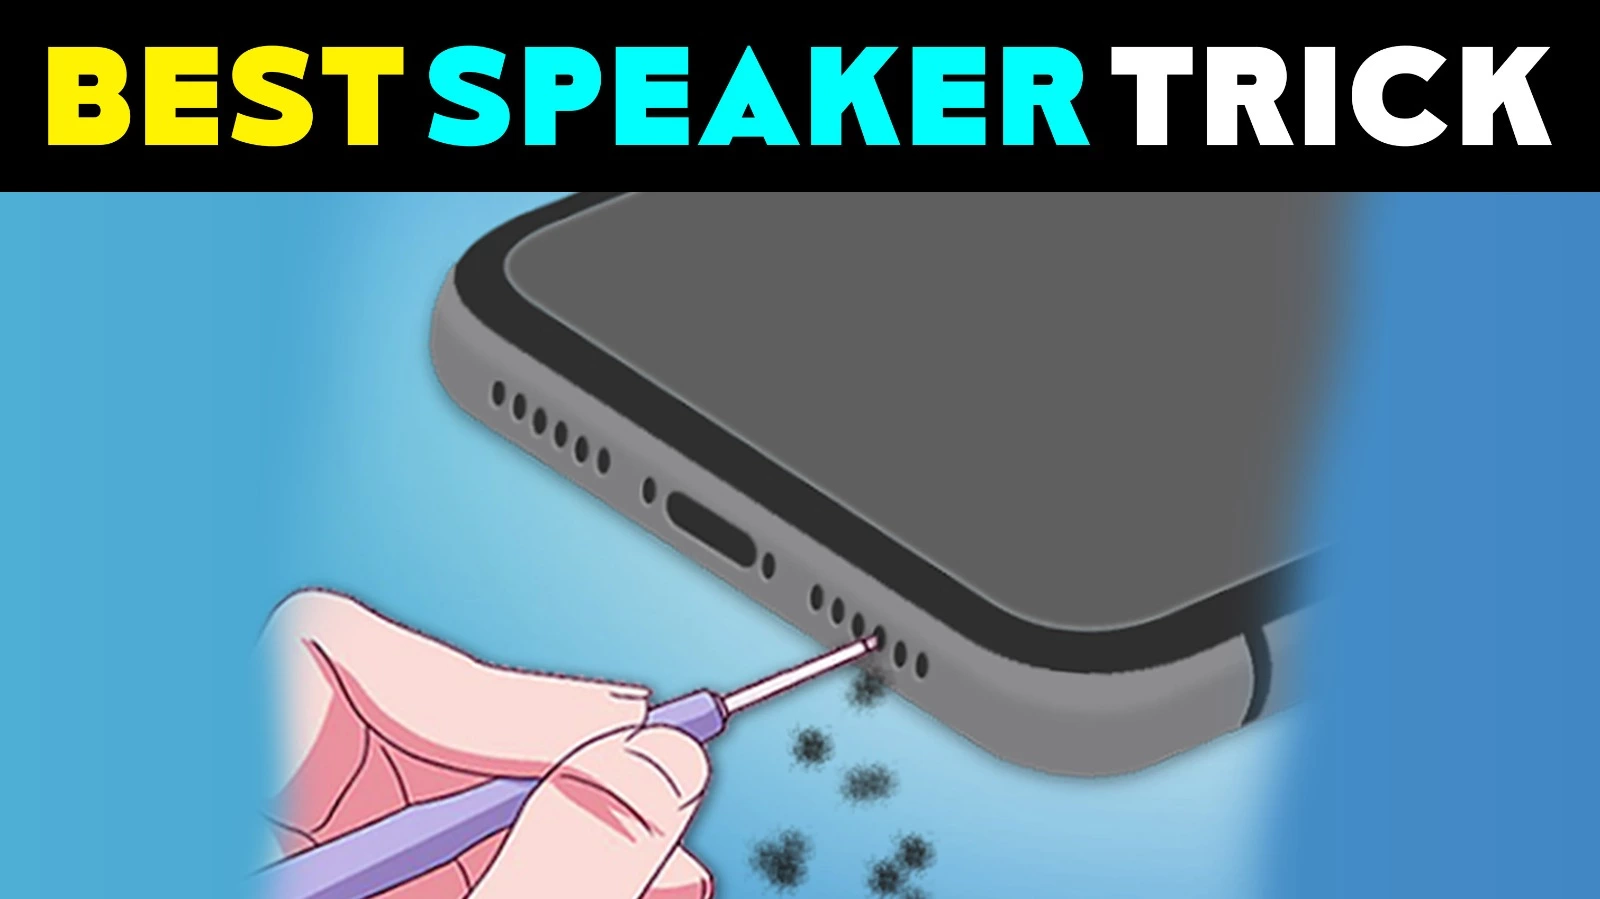 TnShorts Best Speaker